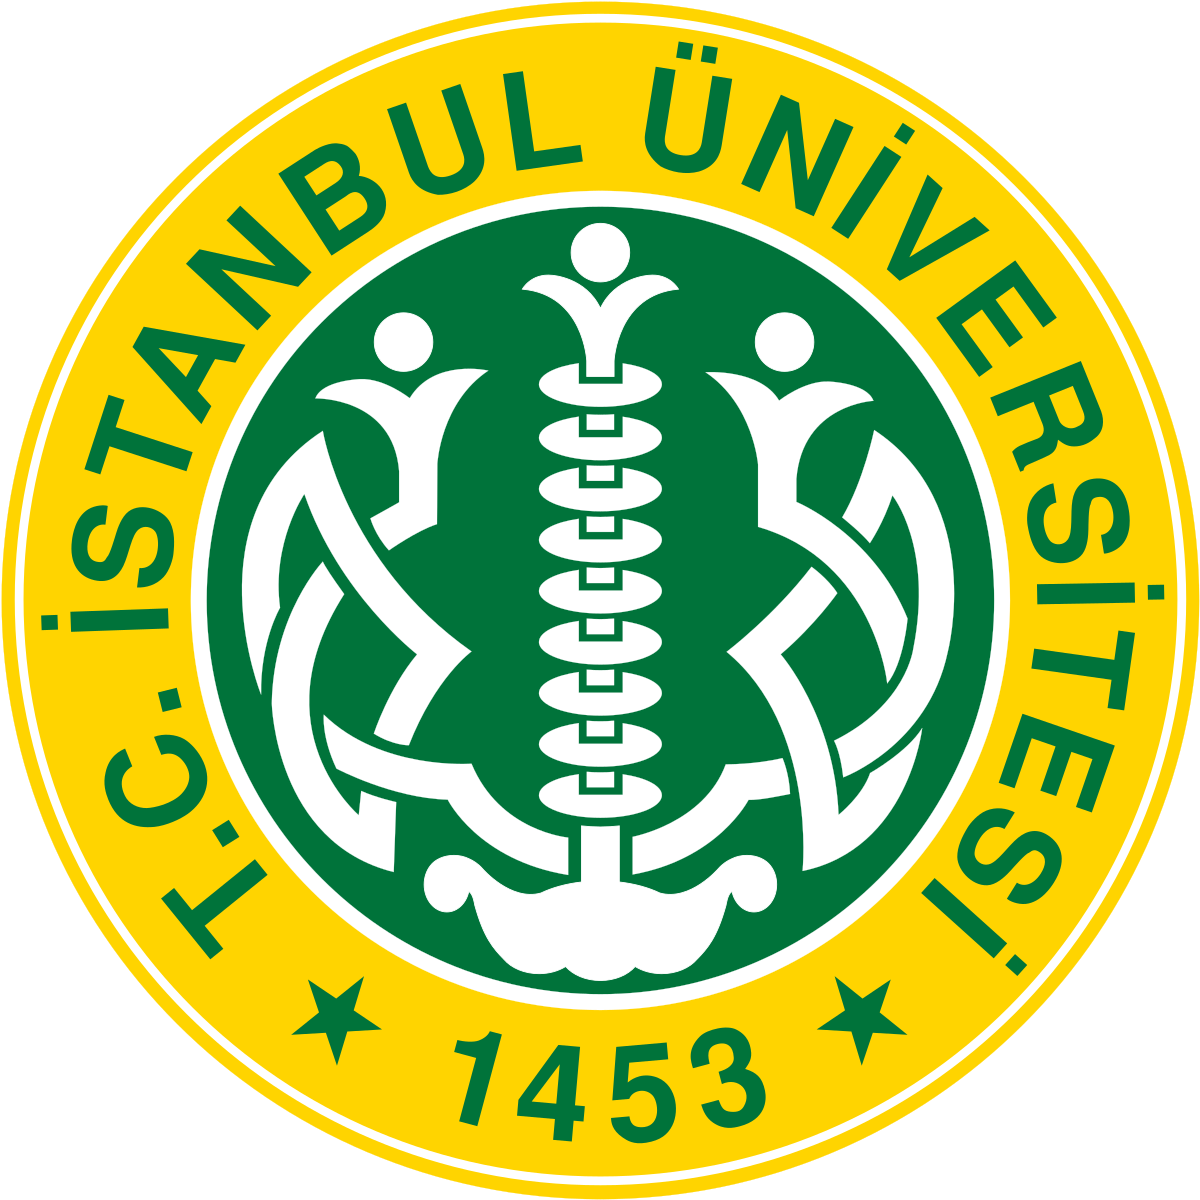 Istanbul University - Wikipedia